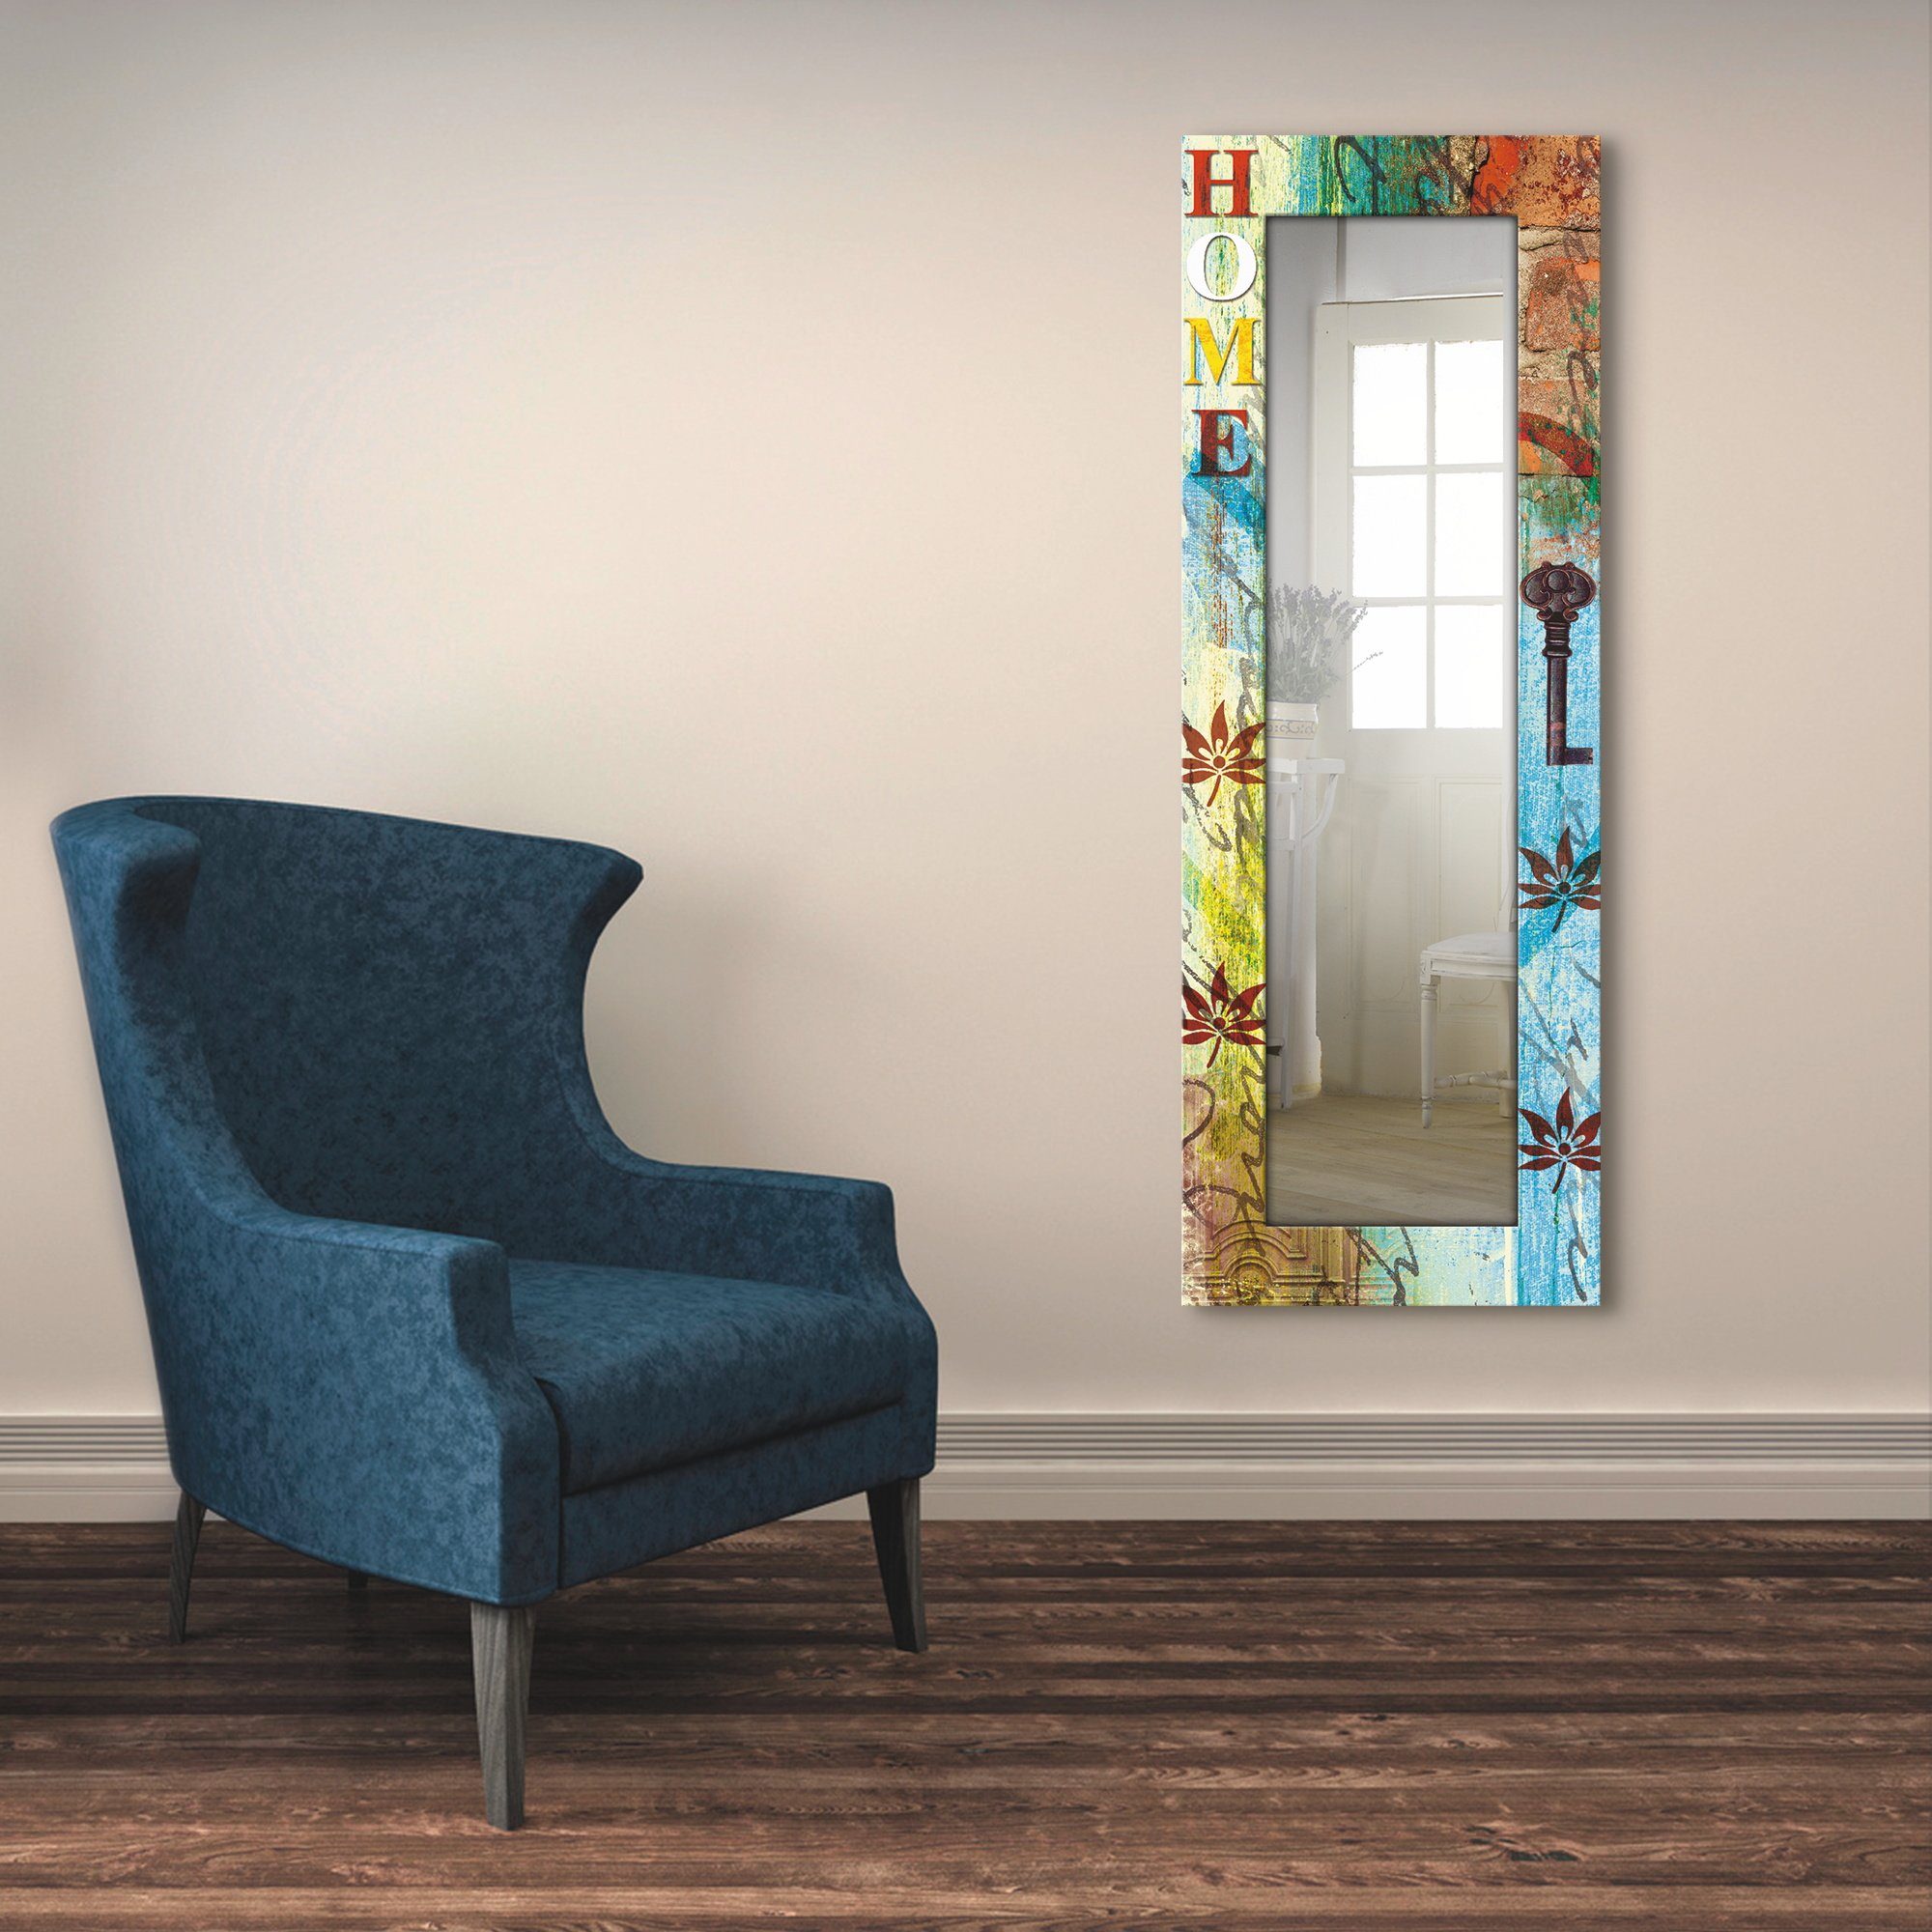 Artland Sierspiegel Kleurrijk huis ingelijste spiegel voor het hele lichaam met motiefrand, geschikt voor kleine, smalle hal, halspiegel, mirror spiegel omrand om op te hangen